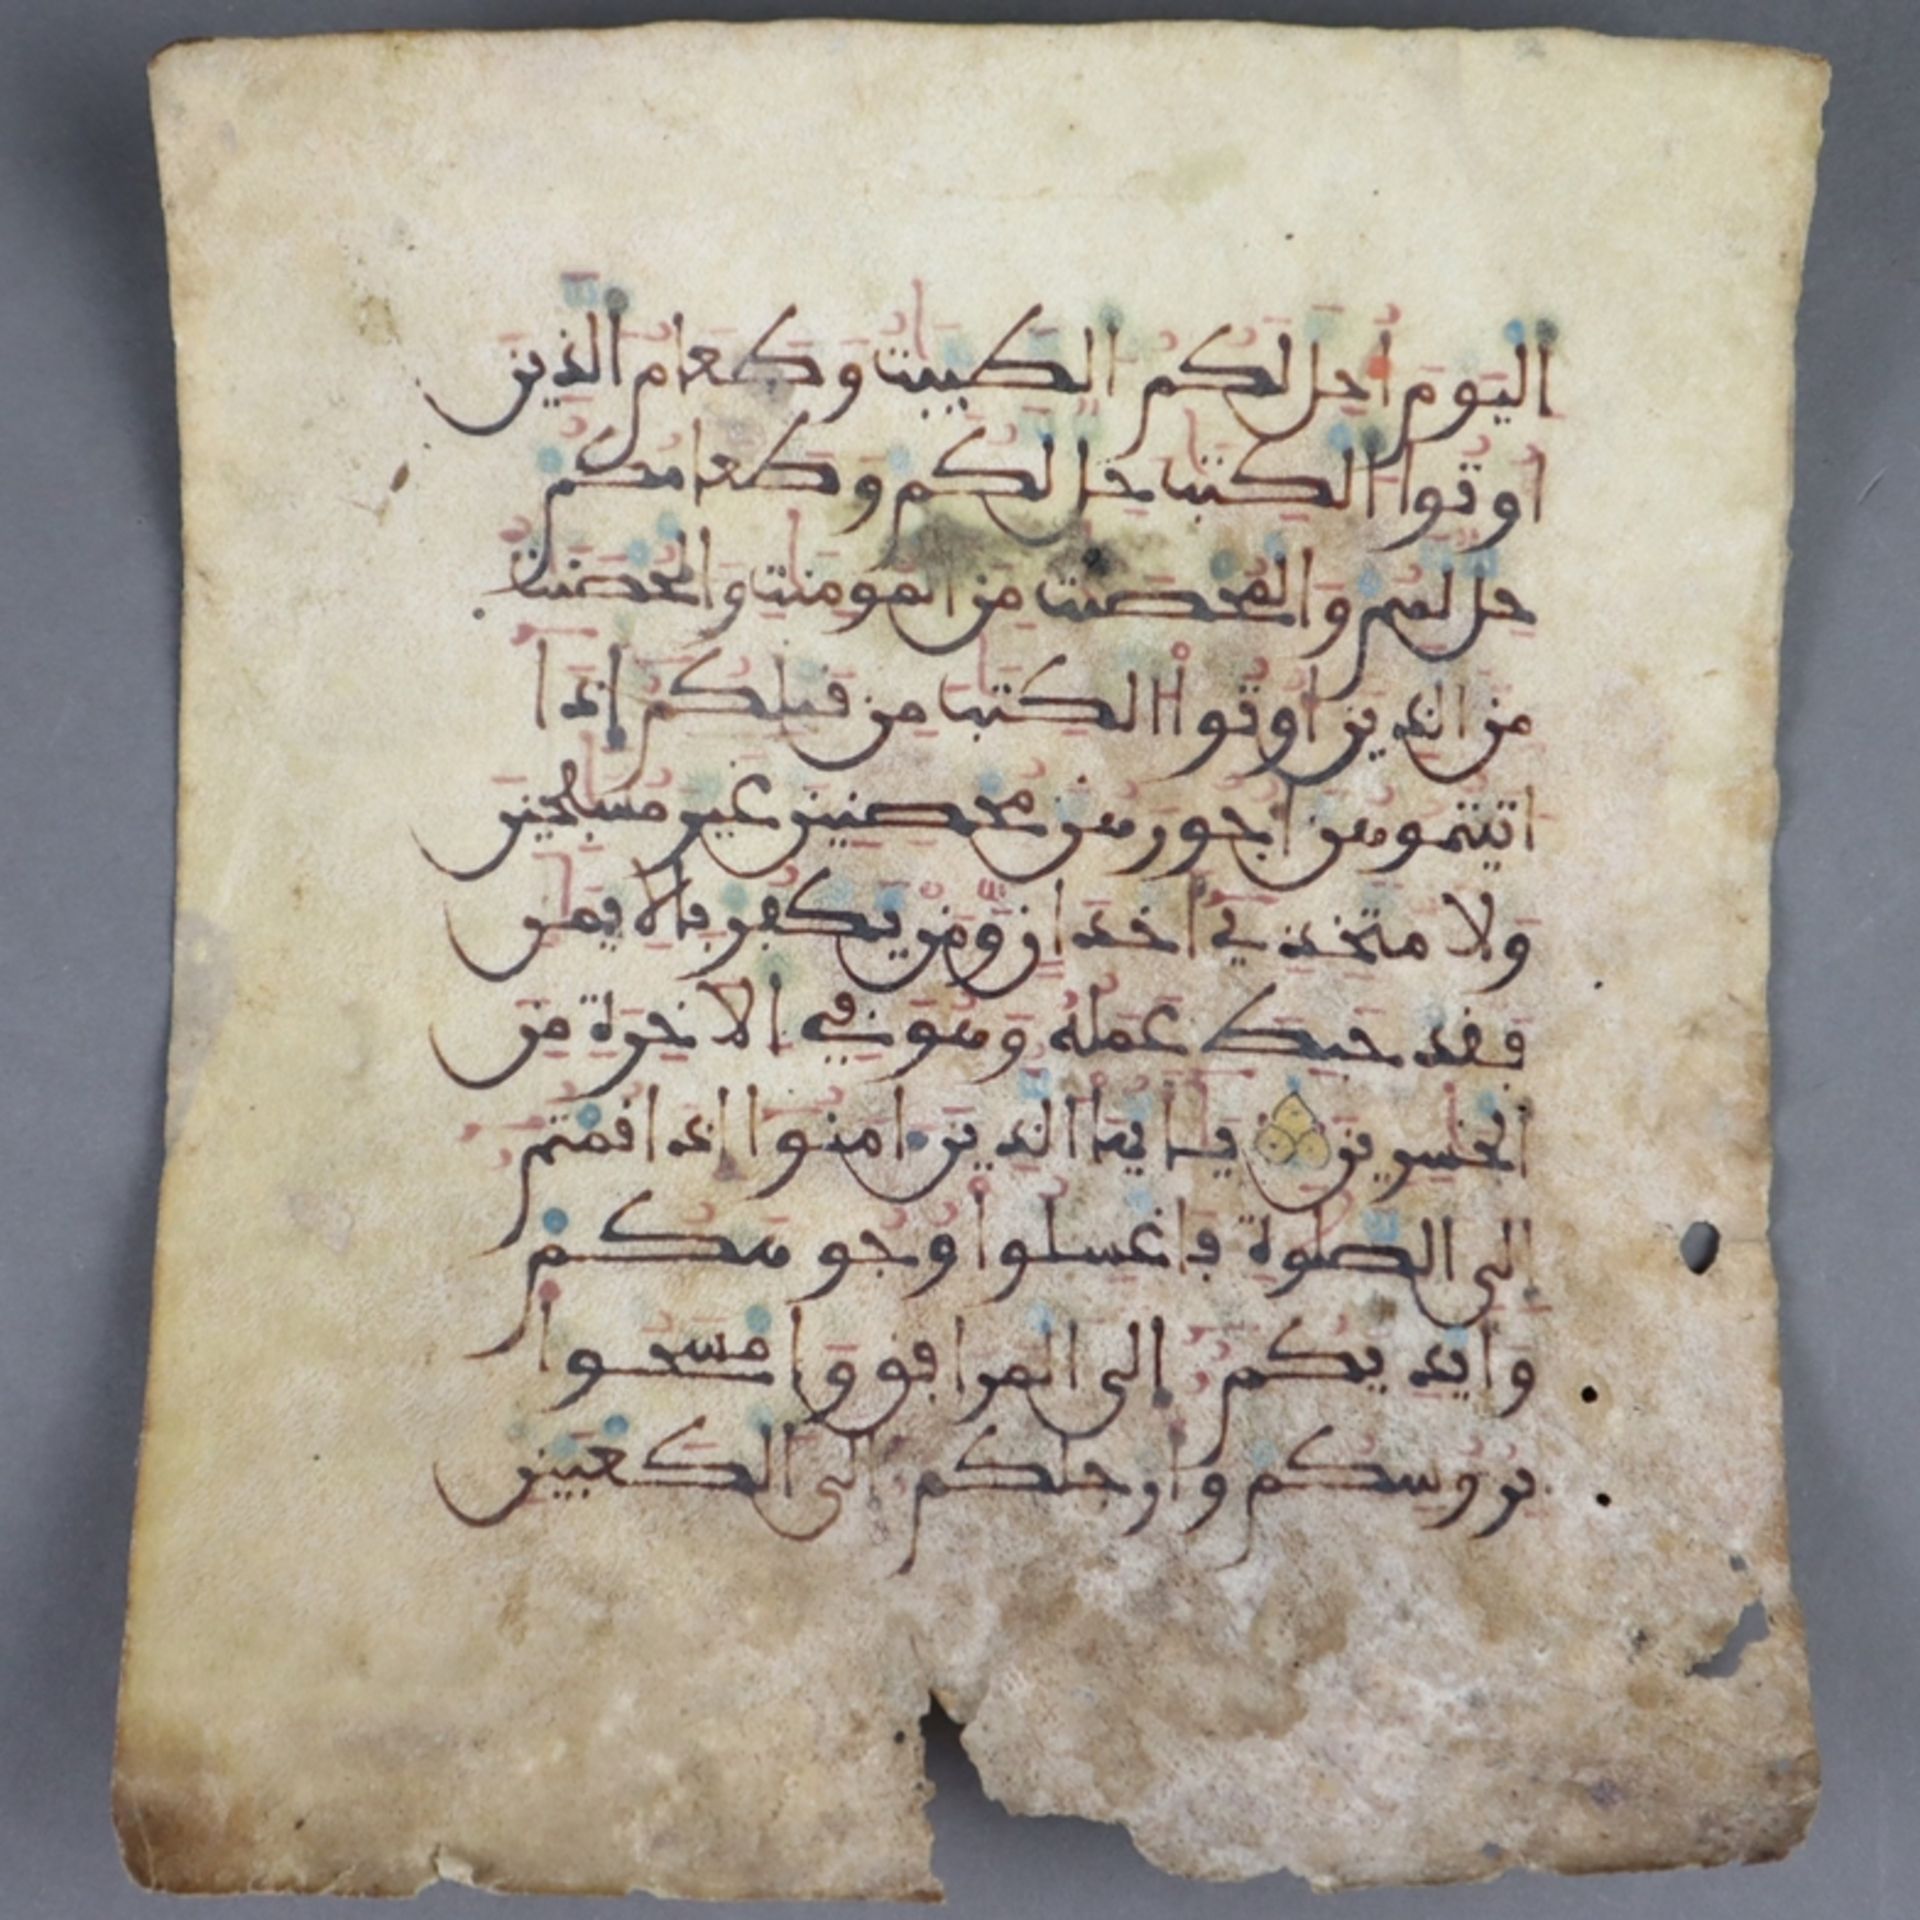 Koranseite - Suren in kaligrafischer Schrift auf Pergamentrolle (Rehhaut?), bei